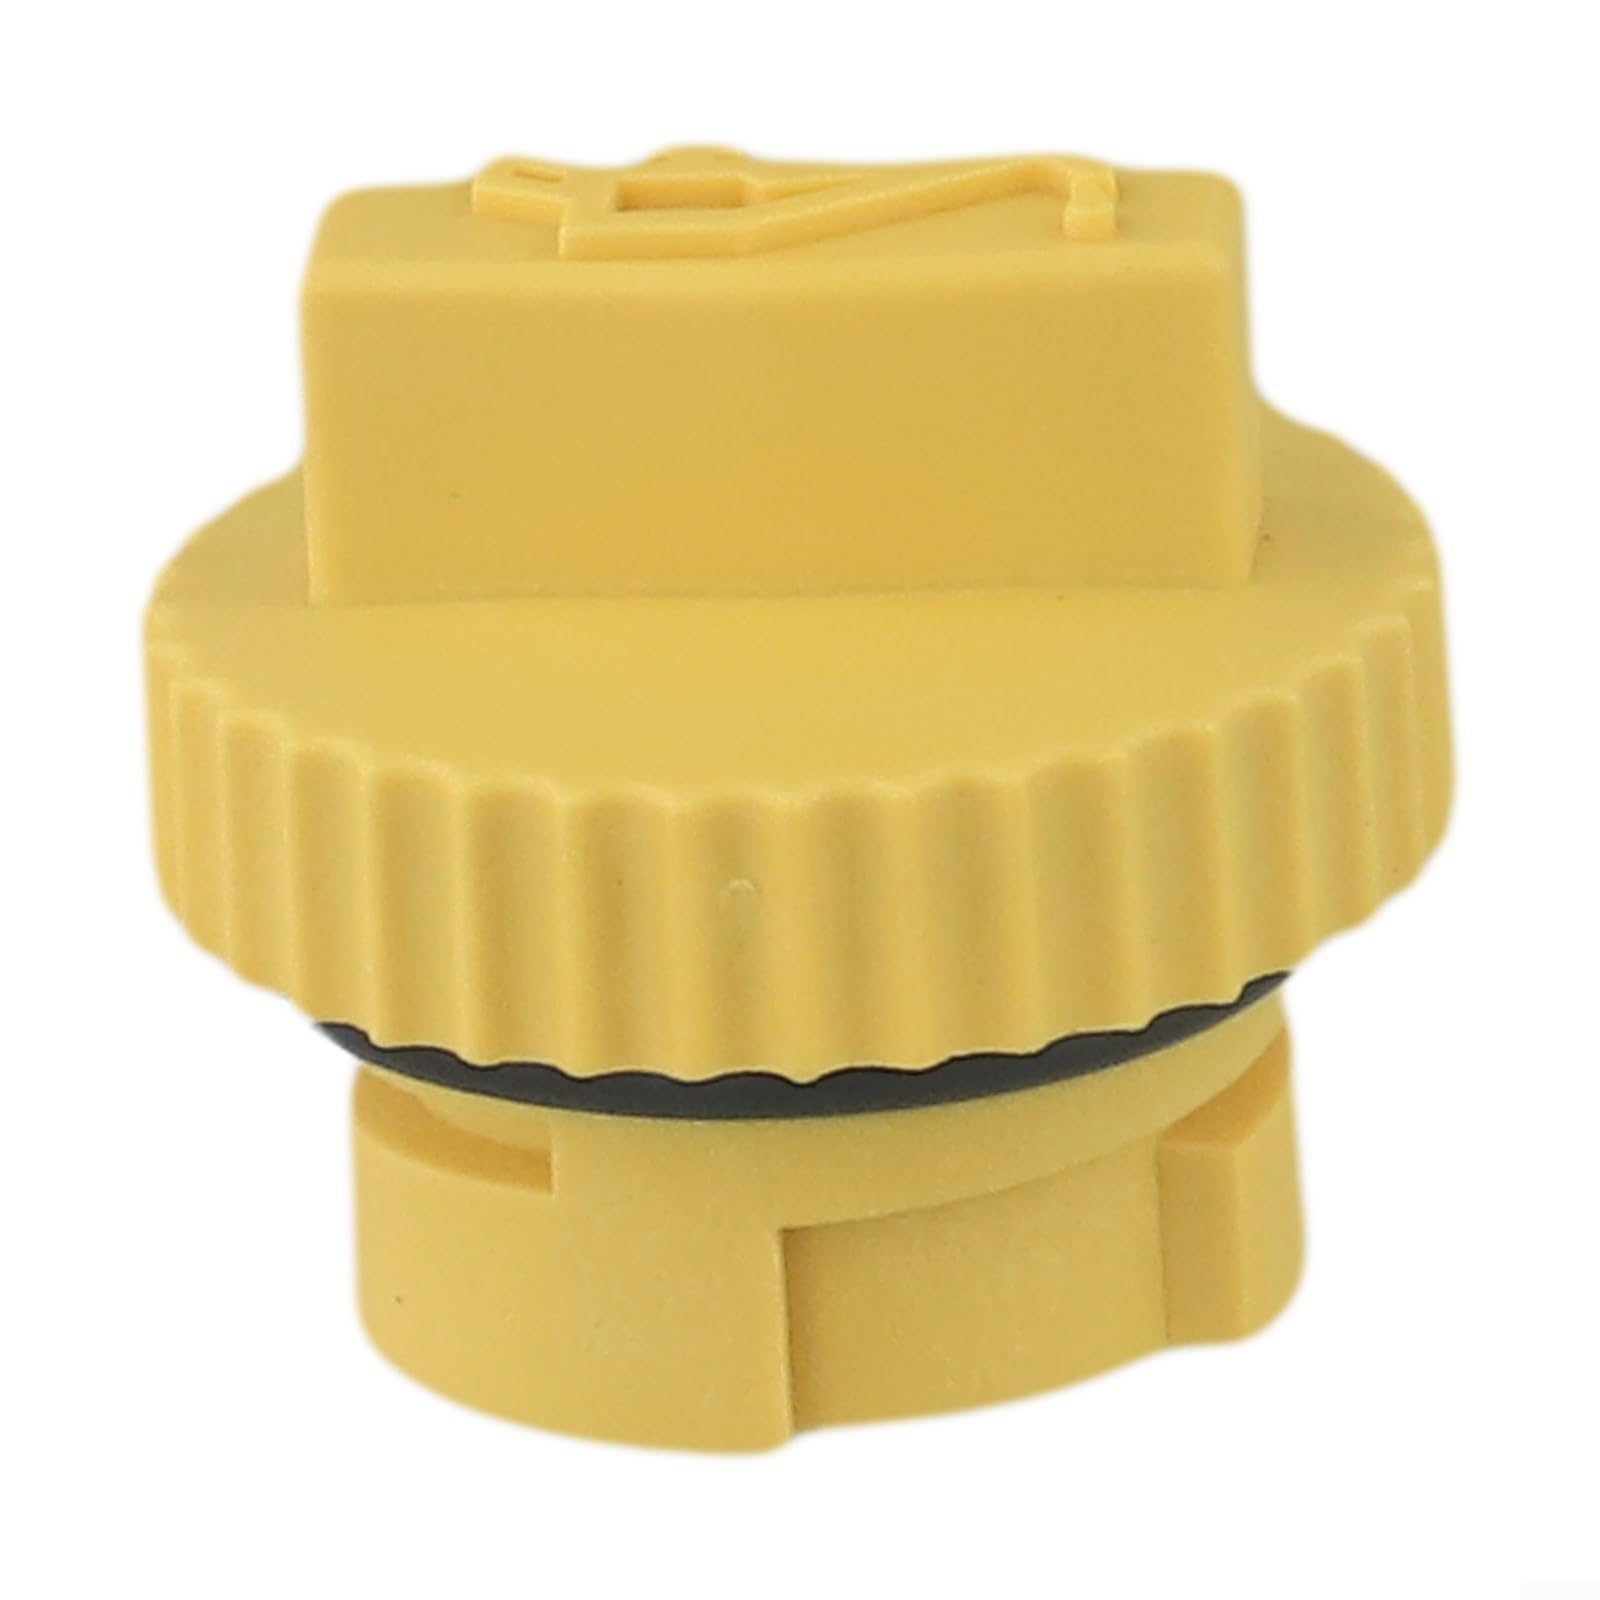 Gelbe Ölfilterkappe für CH18, CH20, CH22, präzise Passform und auslaufsicheres Design von RemixAst